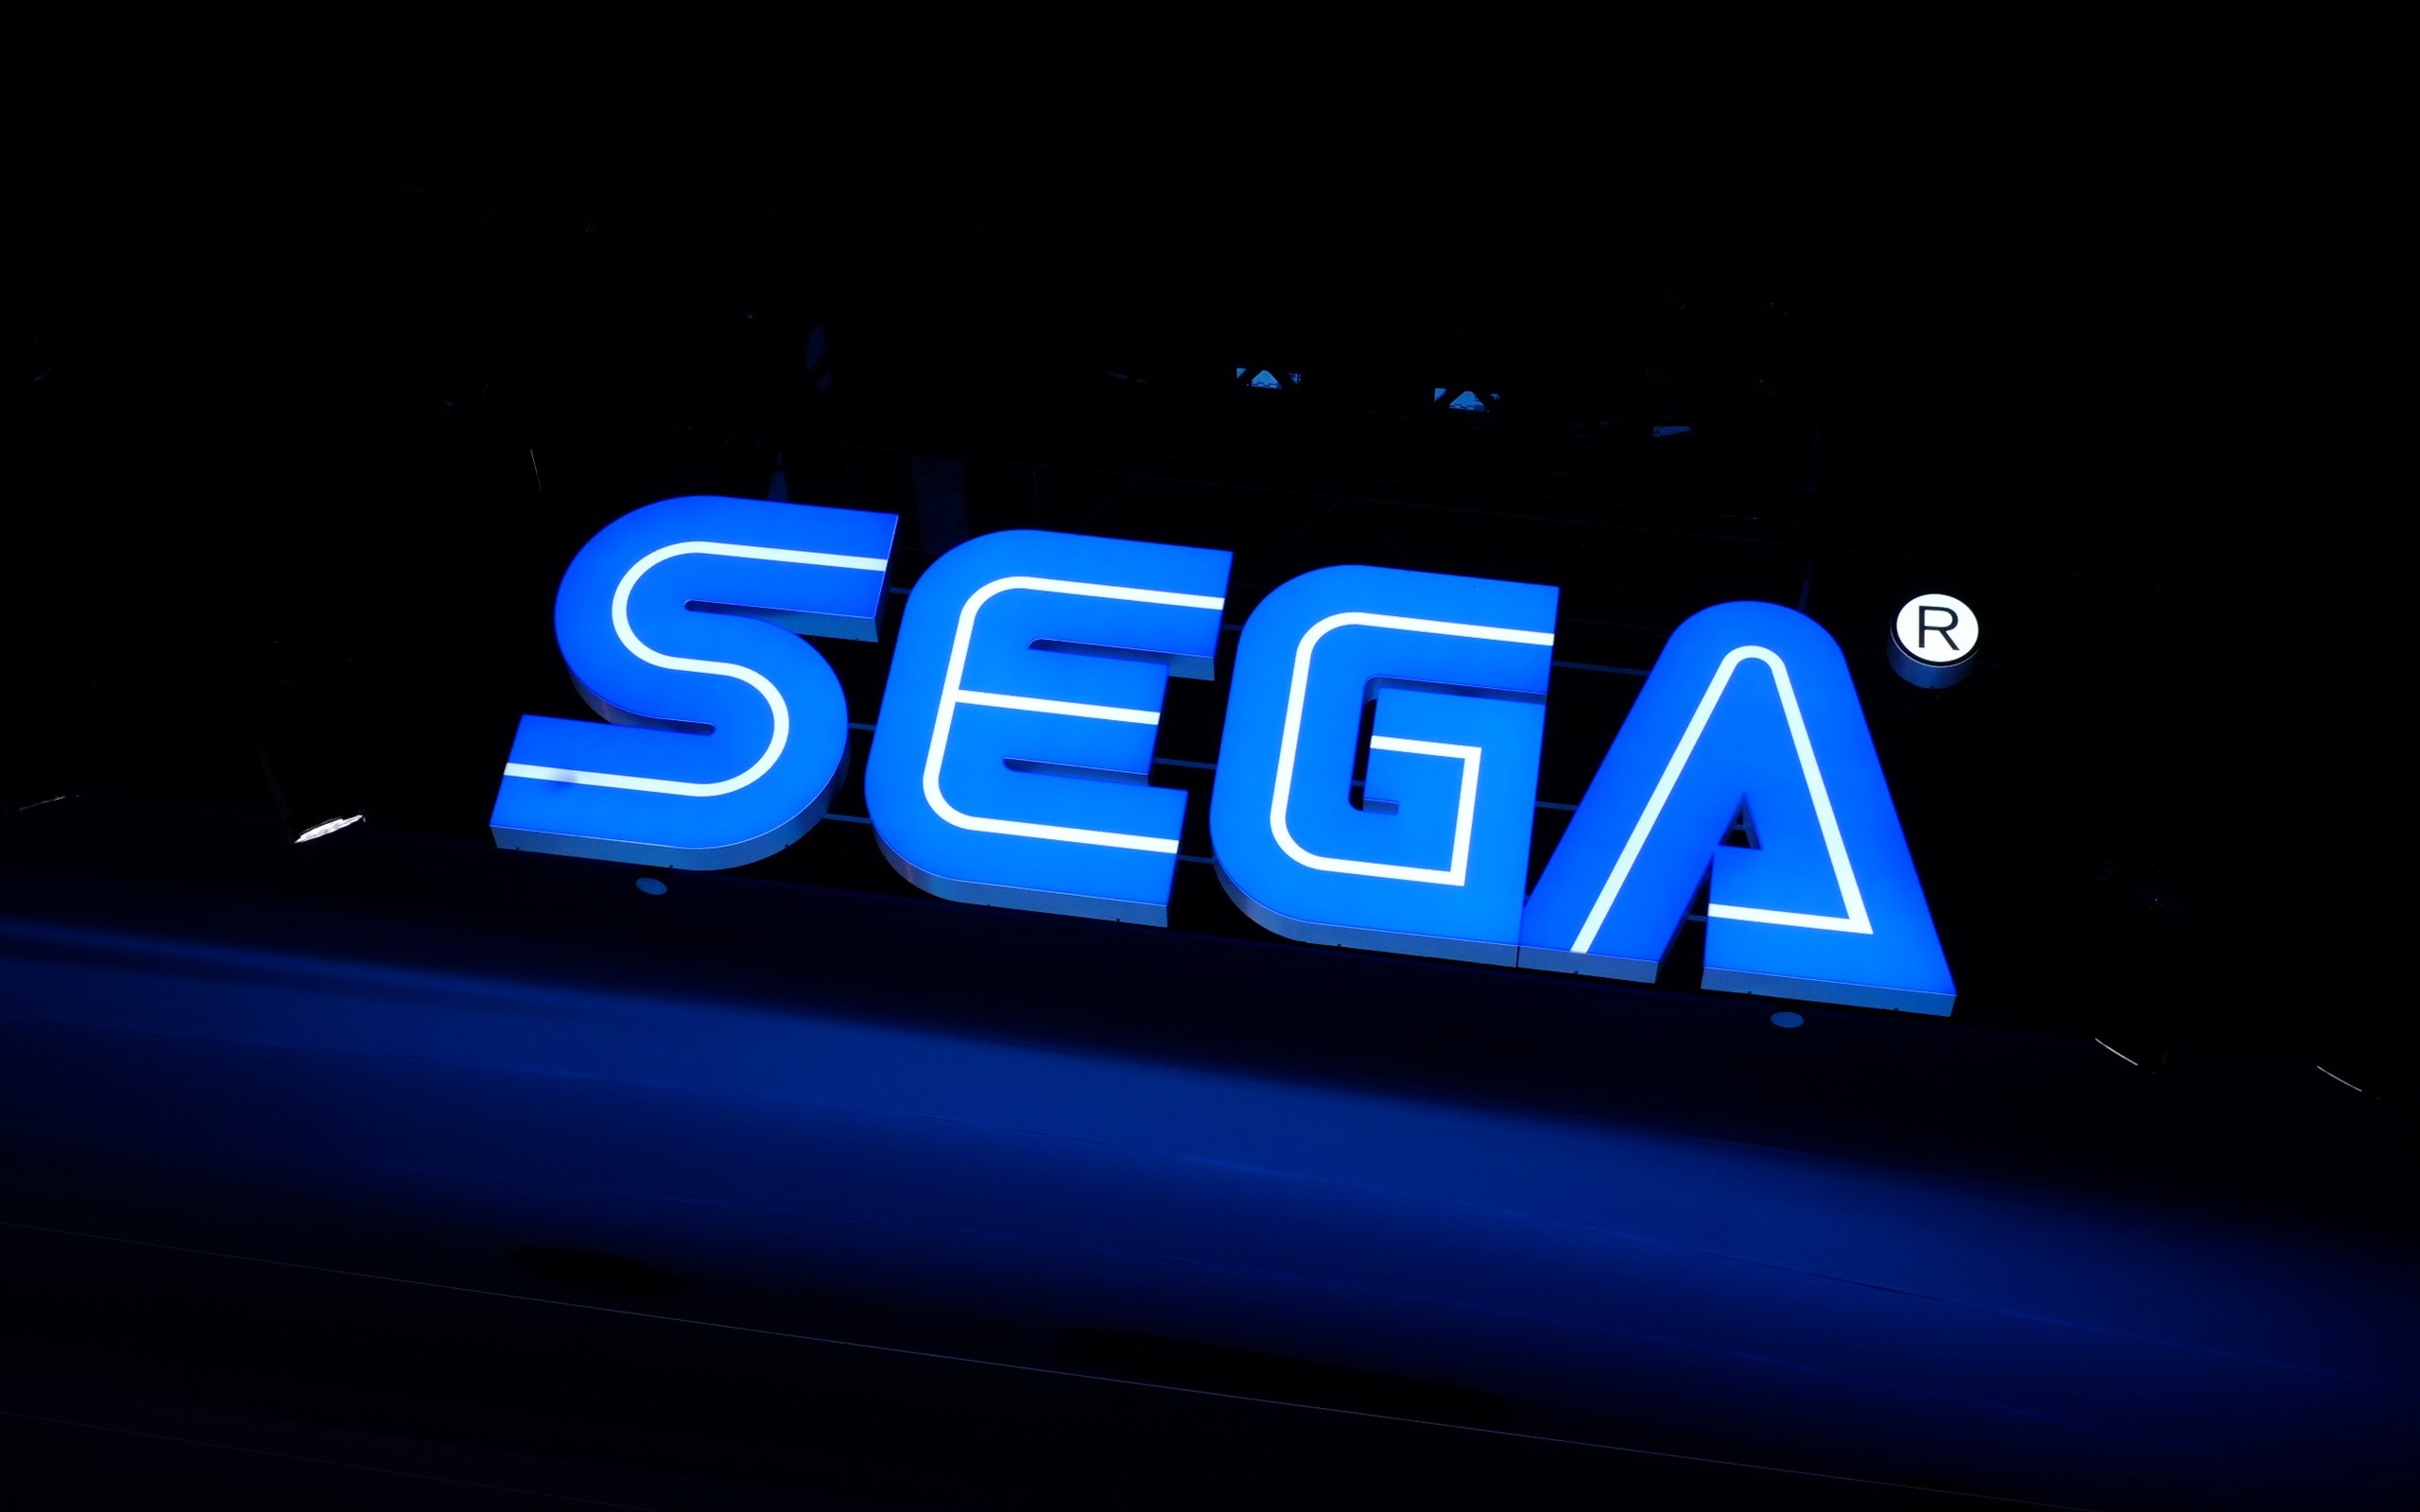 2560x1600 Sega logo wallpaper | other | Wallpaper Better